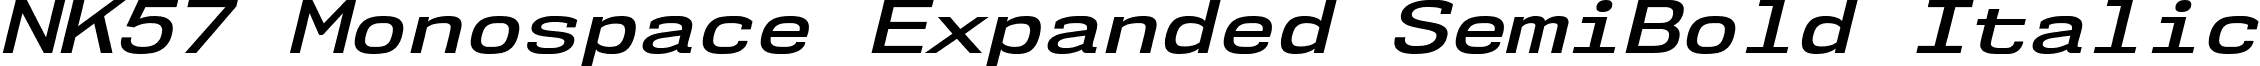 NK57 Monospace Expanded SemiBold Italic font - nk57-monospace.expanded-semibold-italic.ttf